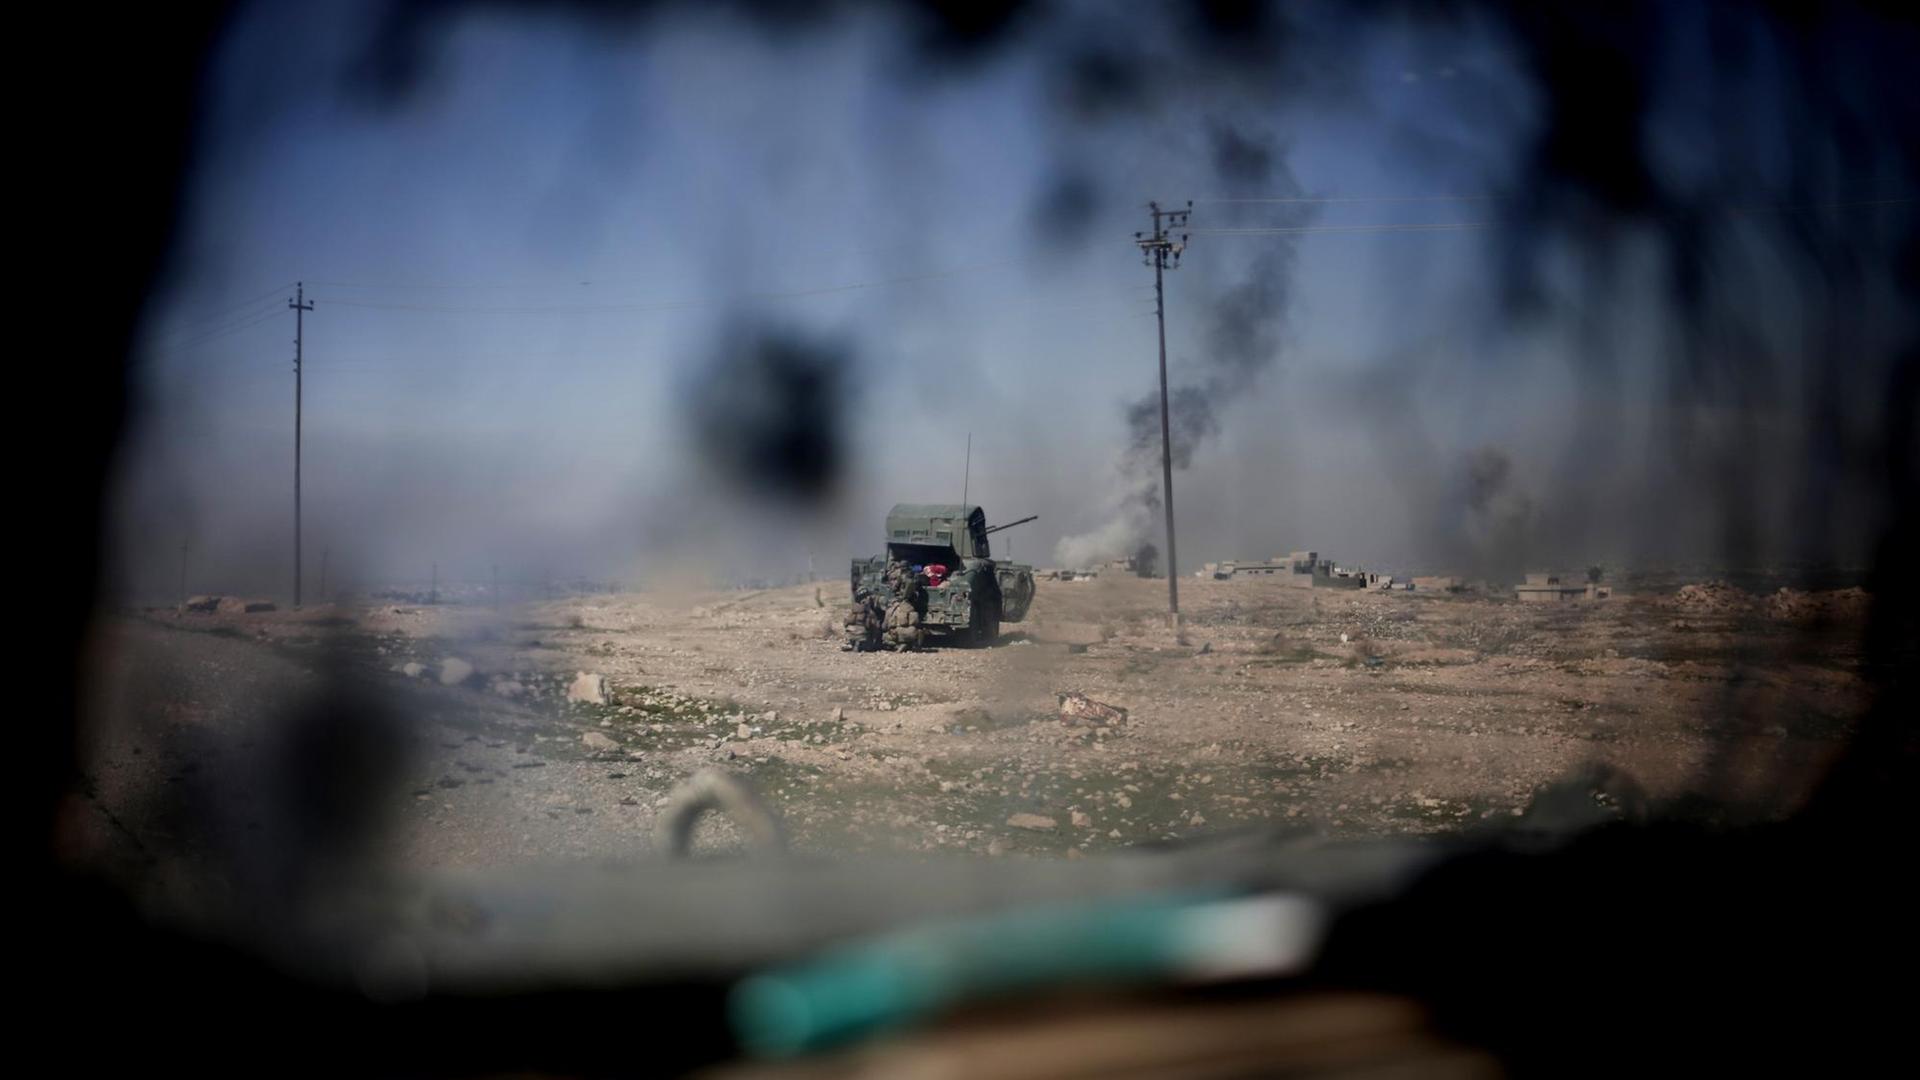 Irakische Polizeieinheiten feuern bei Abu Saif auf Positionen der Terrormiliz Islamischer Staat (IS). Die irakische Armee hat ihren Vorstoß auf West-Mossul am 20.02.2017 fortgesetzt.